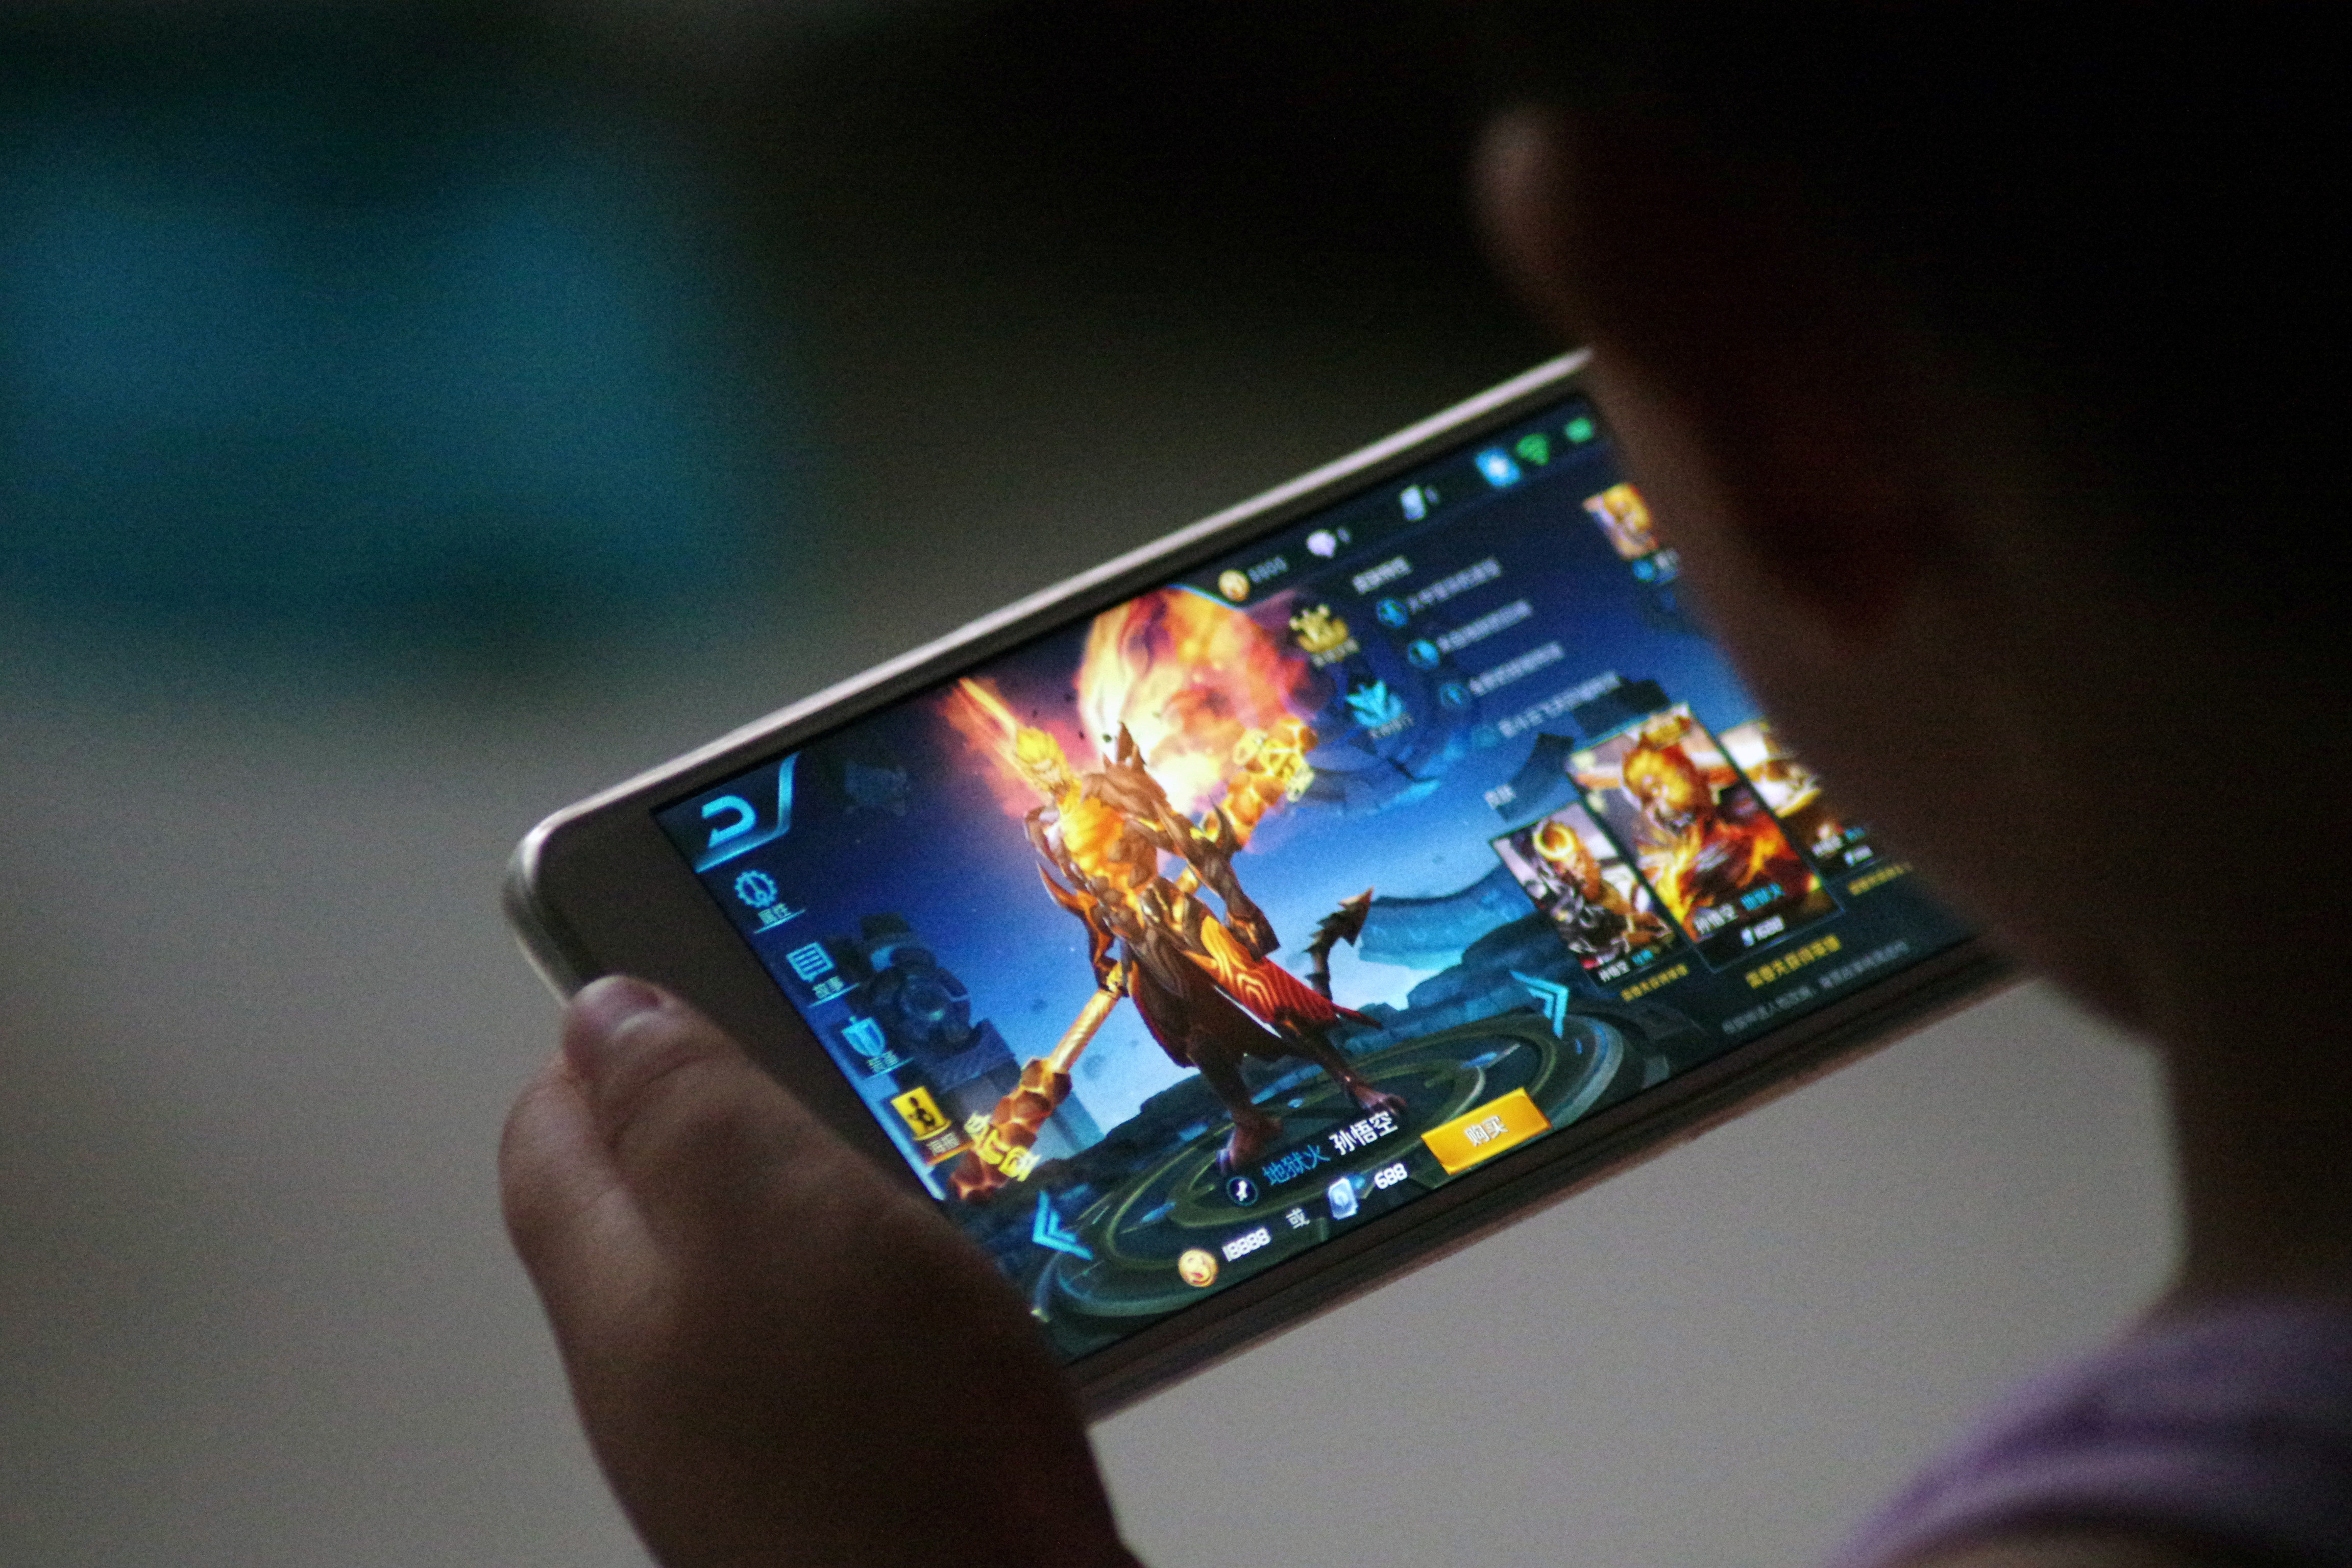 Games mobile com. Китайский игровой смартфон. Игры на смартфон. Игровой смартфон в руках. Самые популярные мобильные игры.